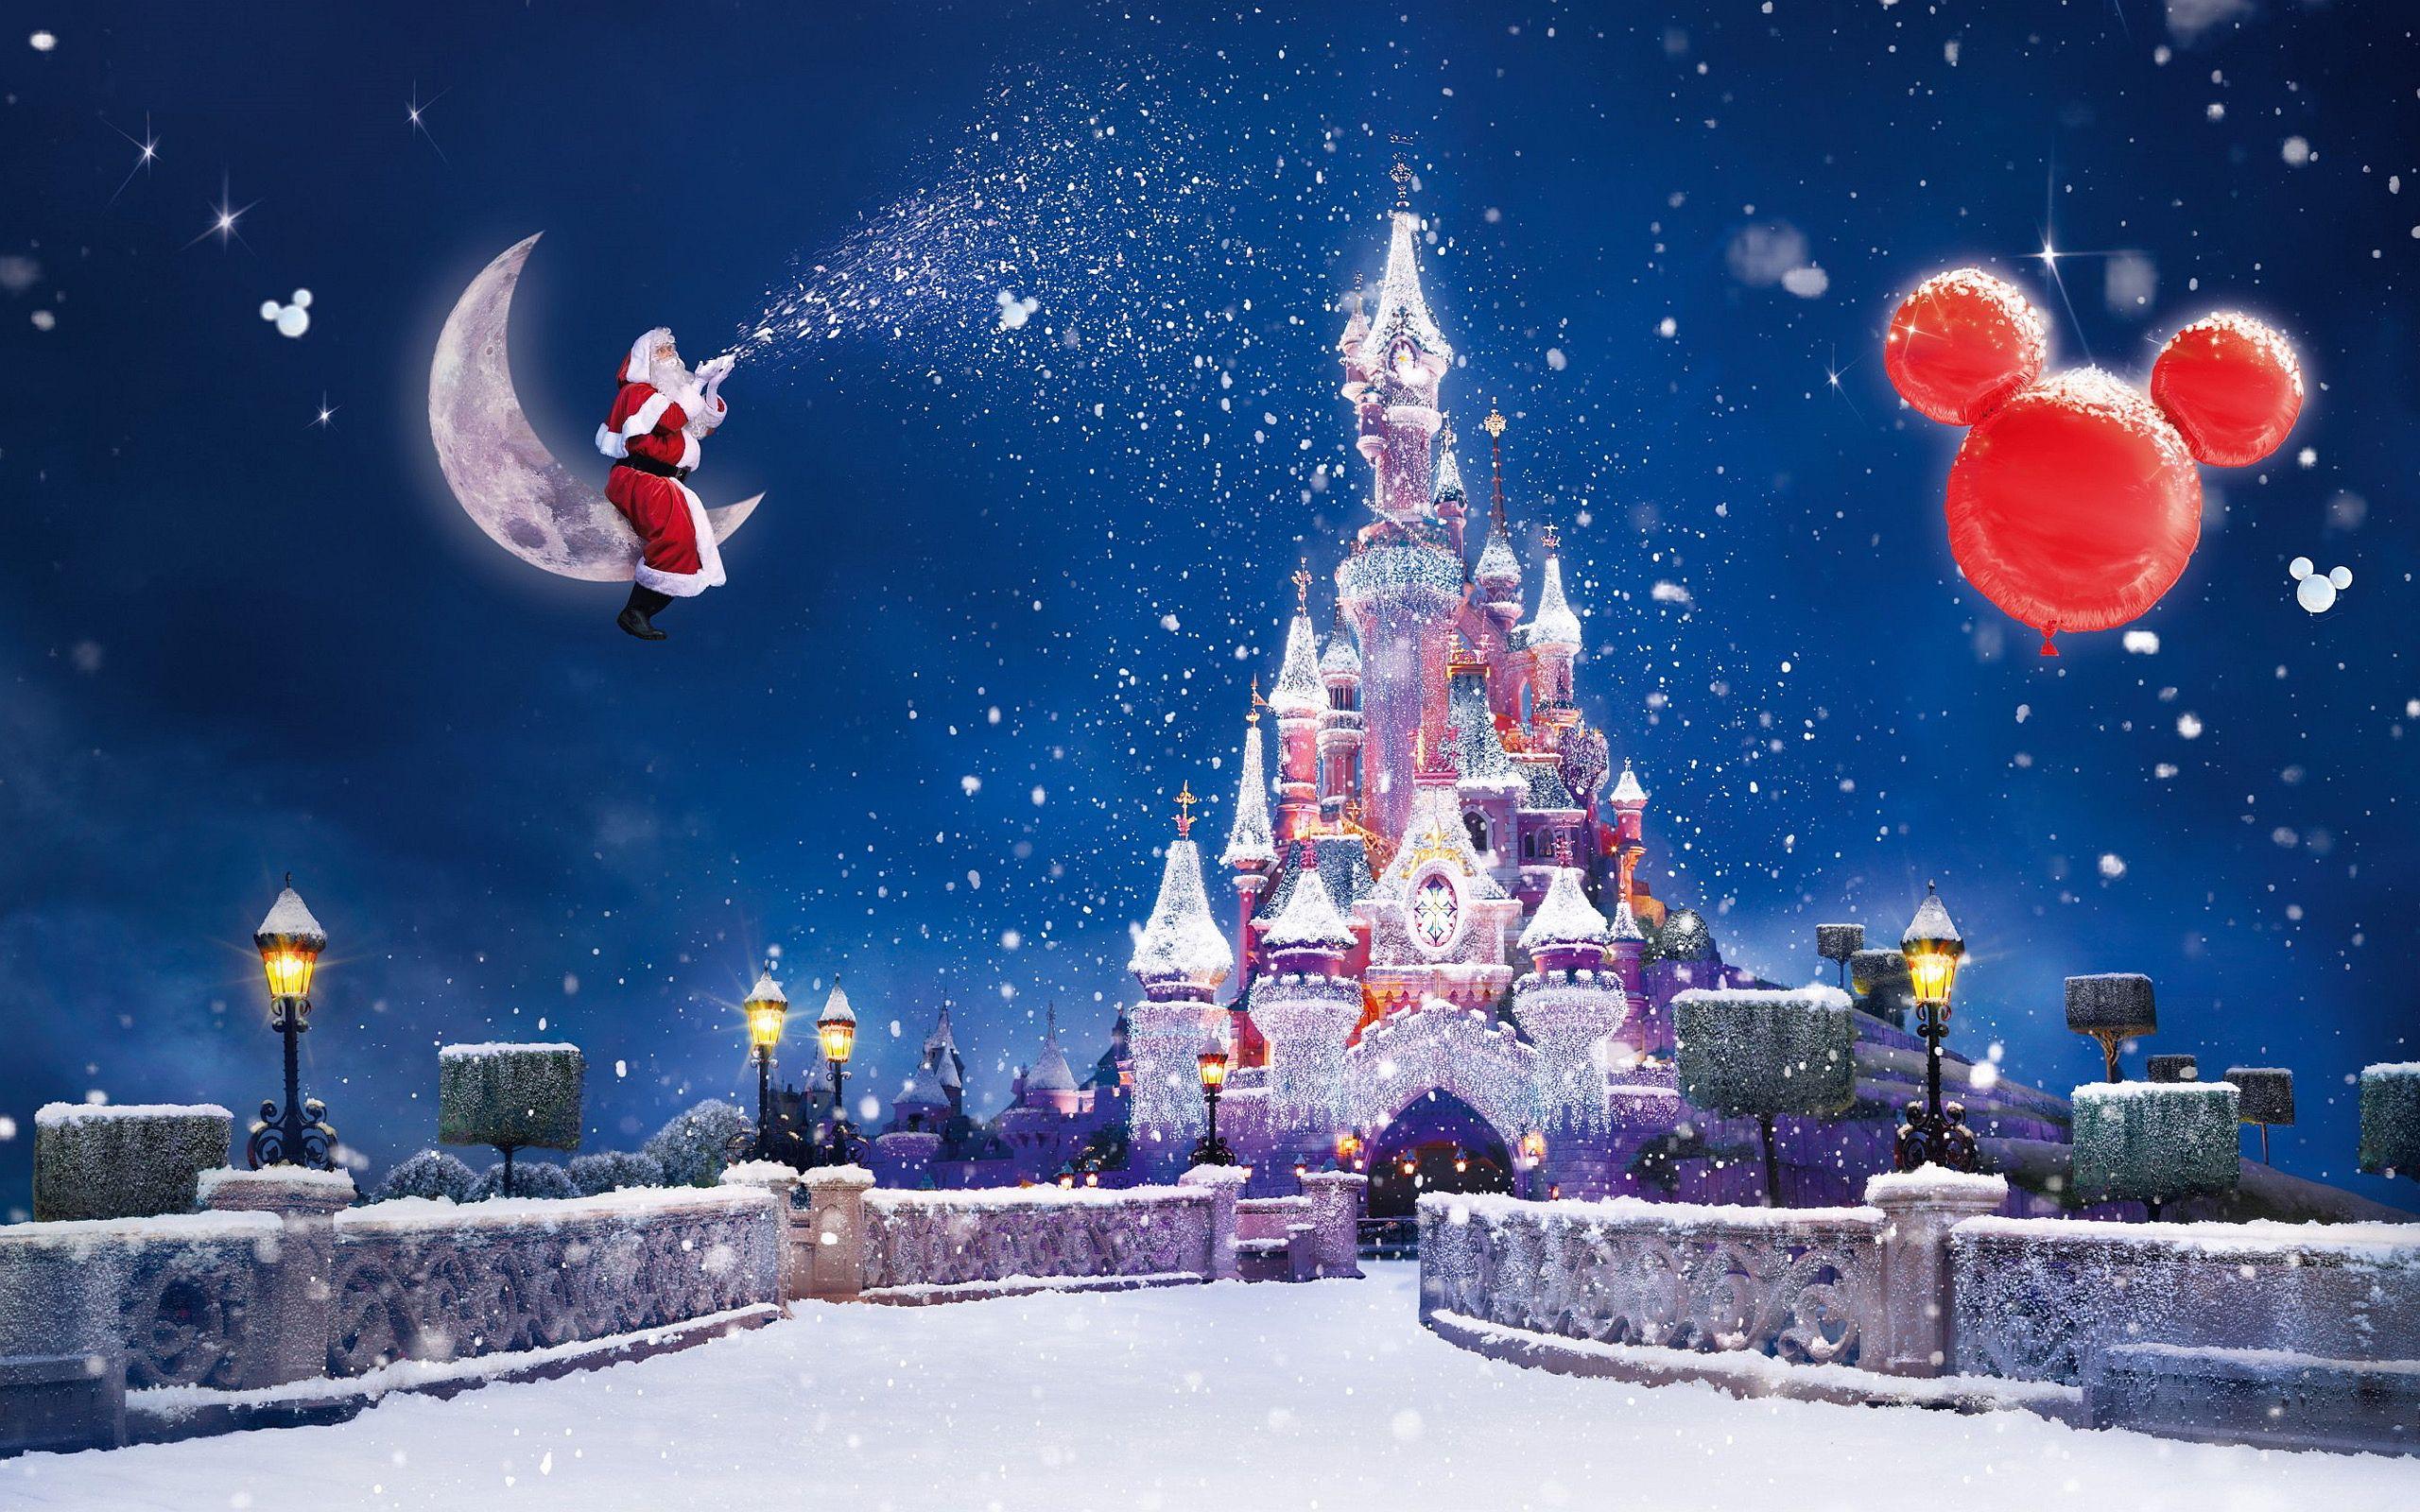 Noel ở Disneyland - Bạn đã bao giờ trải nghiệm cảm giác tựa như trong một bộ phim hoạt hình đầy màu sắc tại Disneyland vào dịp Noel chưa? Hãy xem những hình ảnh đầy ấn tượng về khu vực lễ hội này để cảm nhận được không khí đón Giáng Sinh đầy phấn khích.